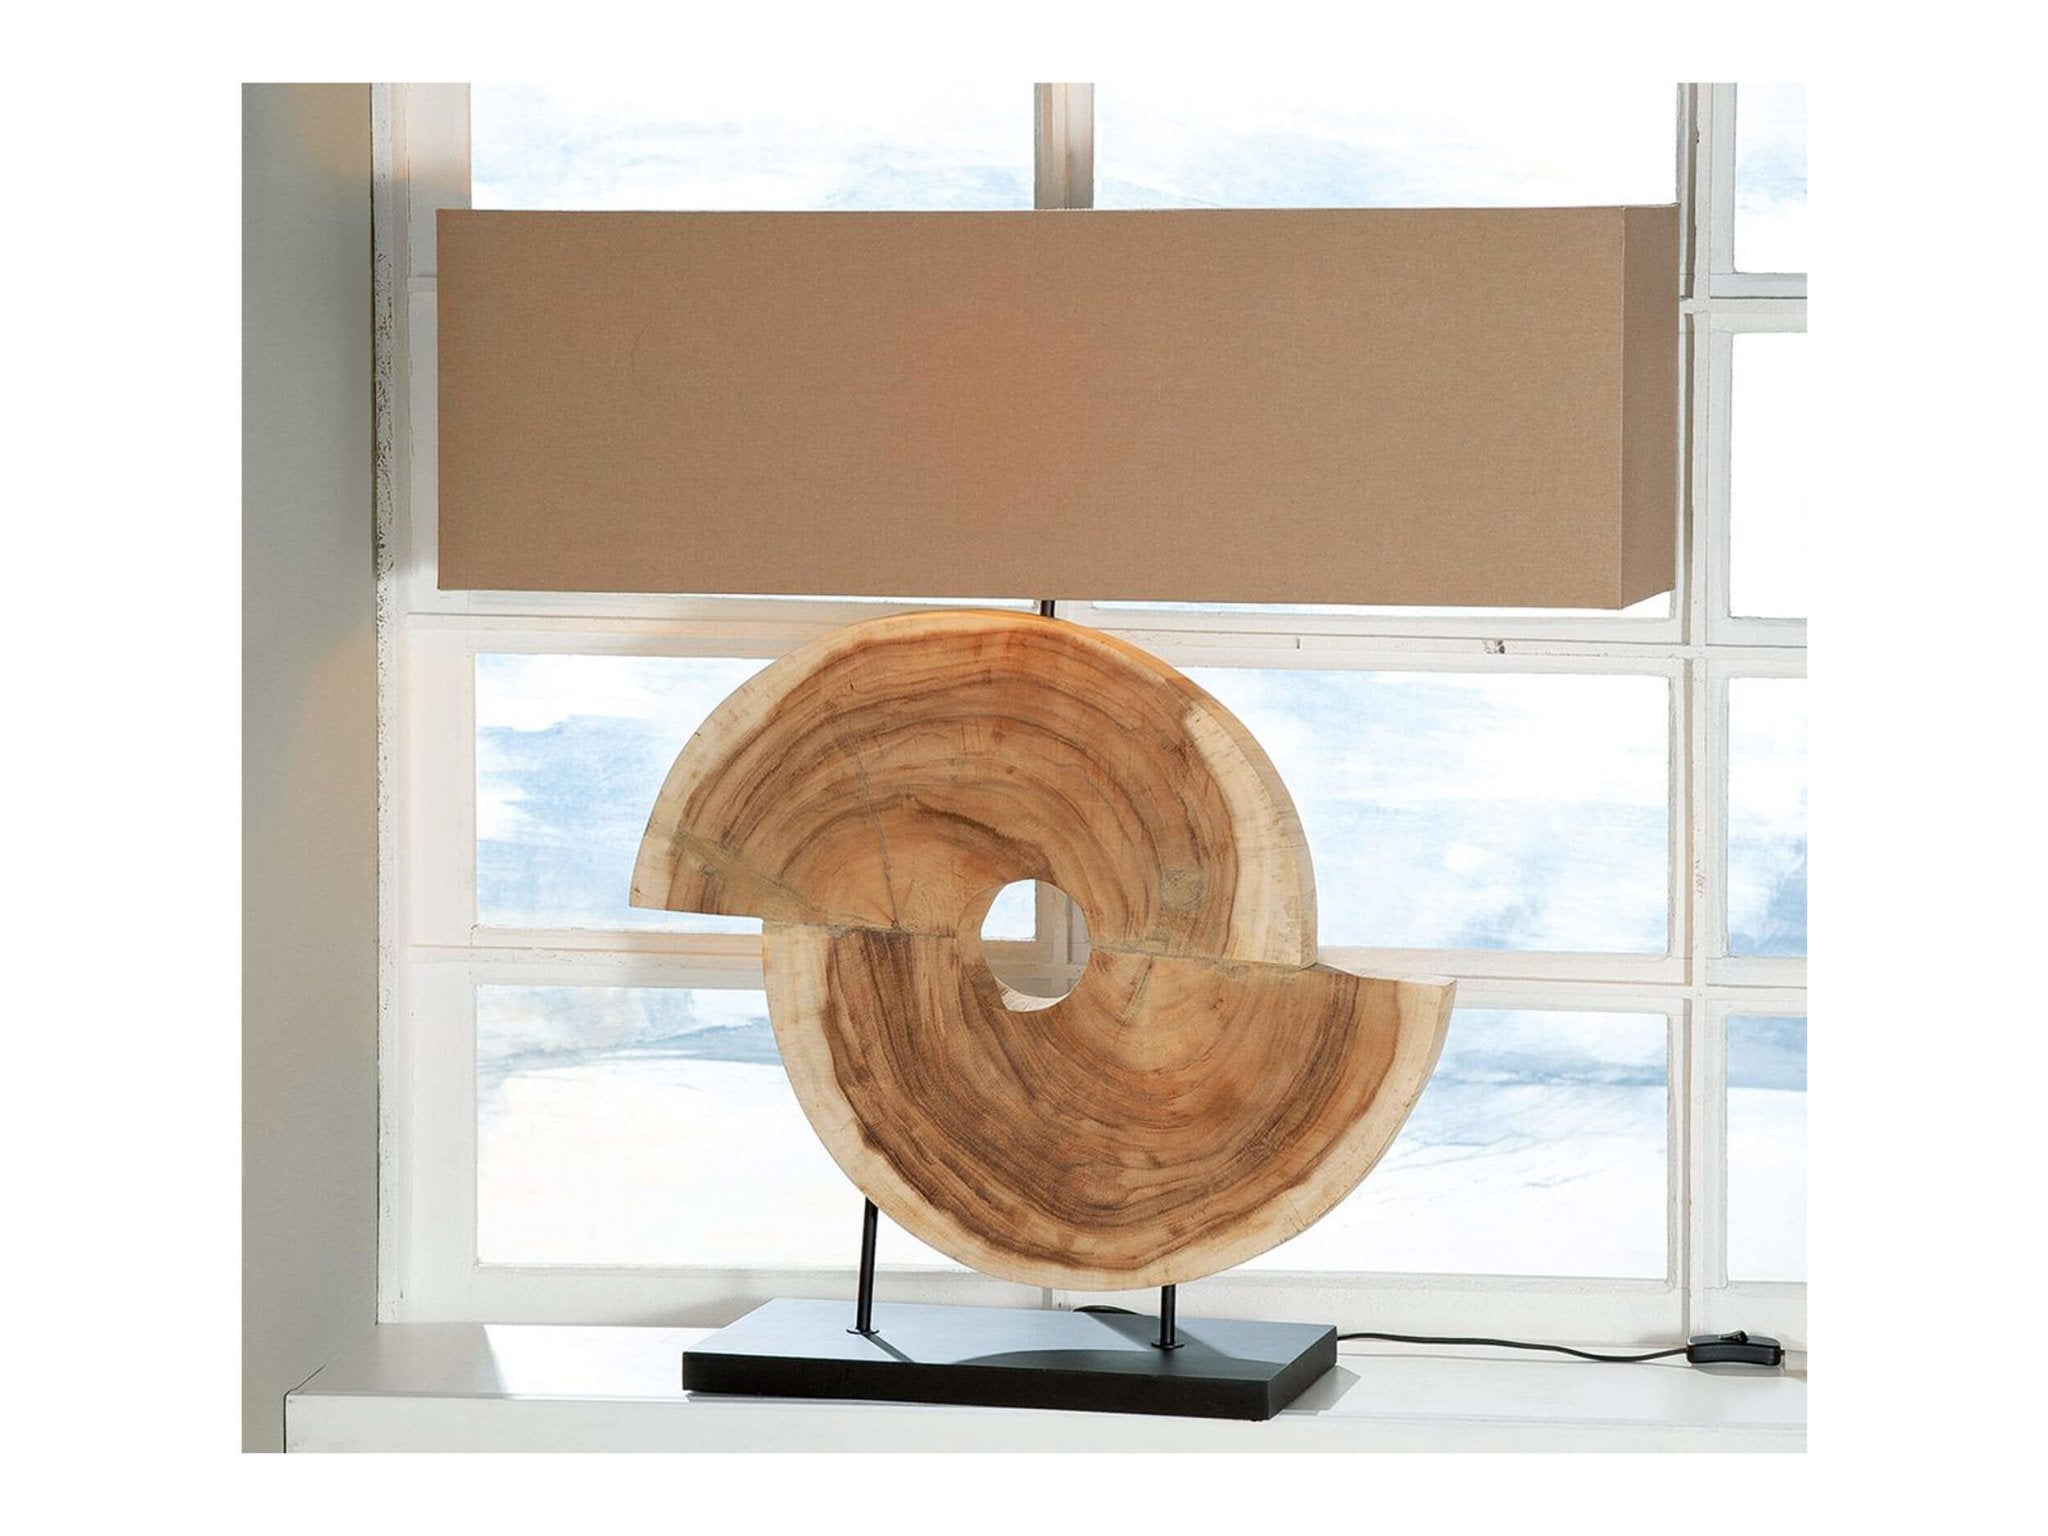 Geometric design tafellampen kopen in natuurlijk hout